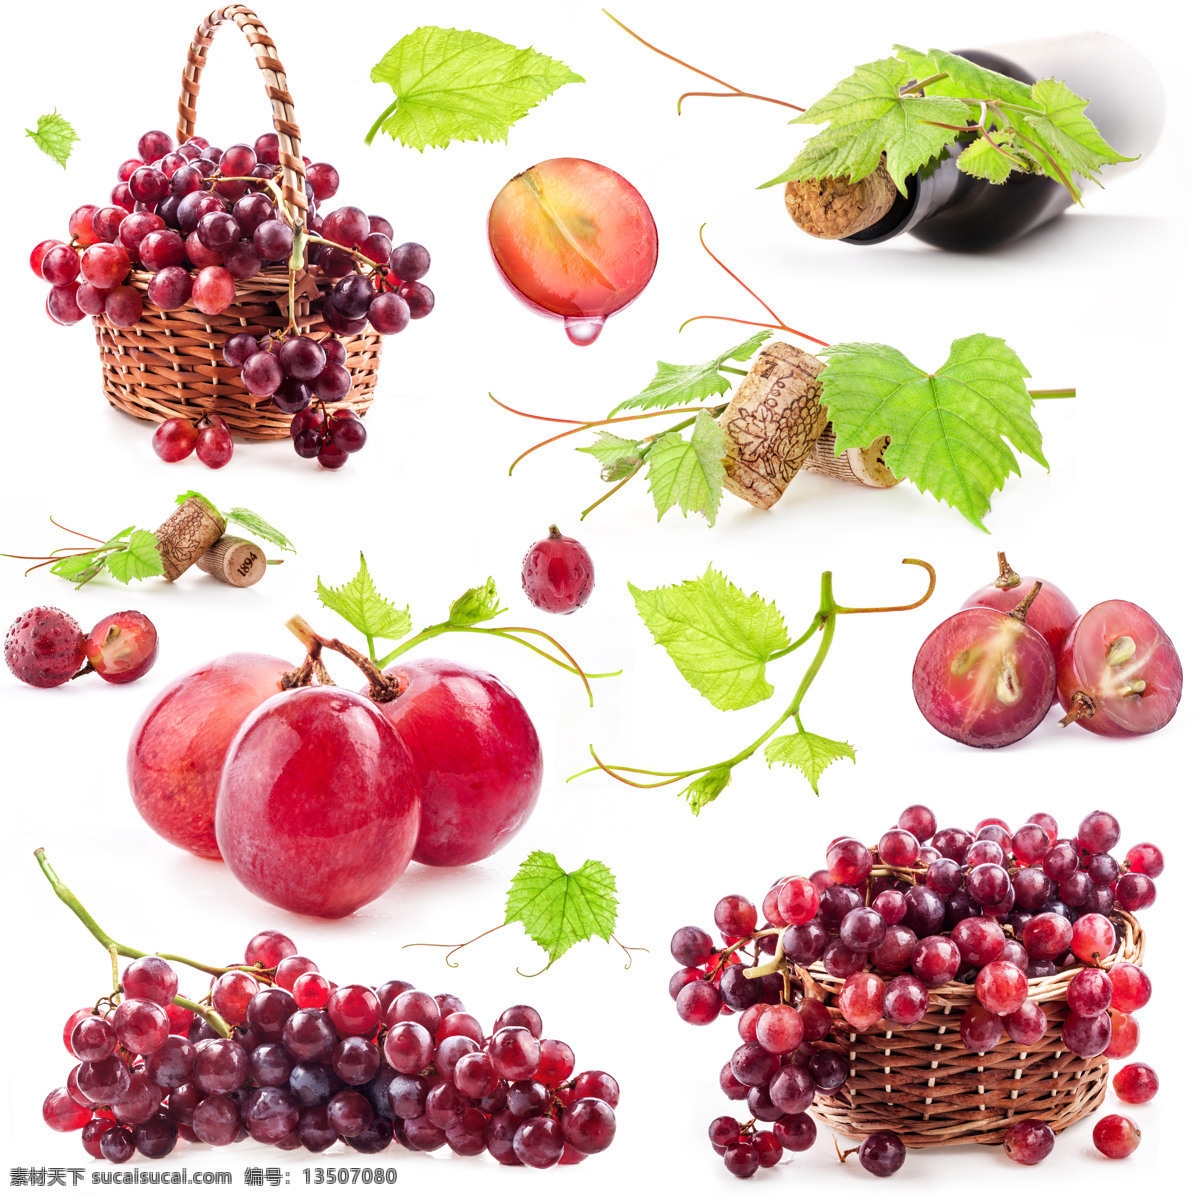 新鲜 水果 图 新鲜水果 葡萄 新鲜葡萄 红酒 葡萄叶 提子 水果蔬菜 餐饮美食 白色